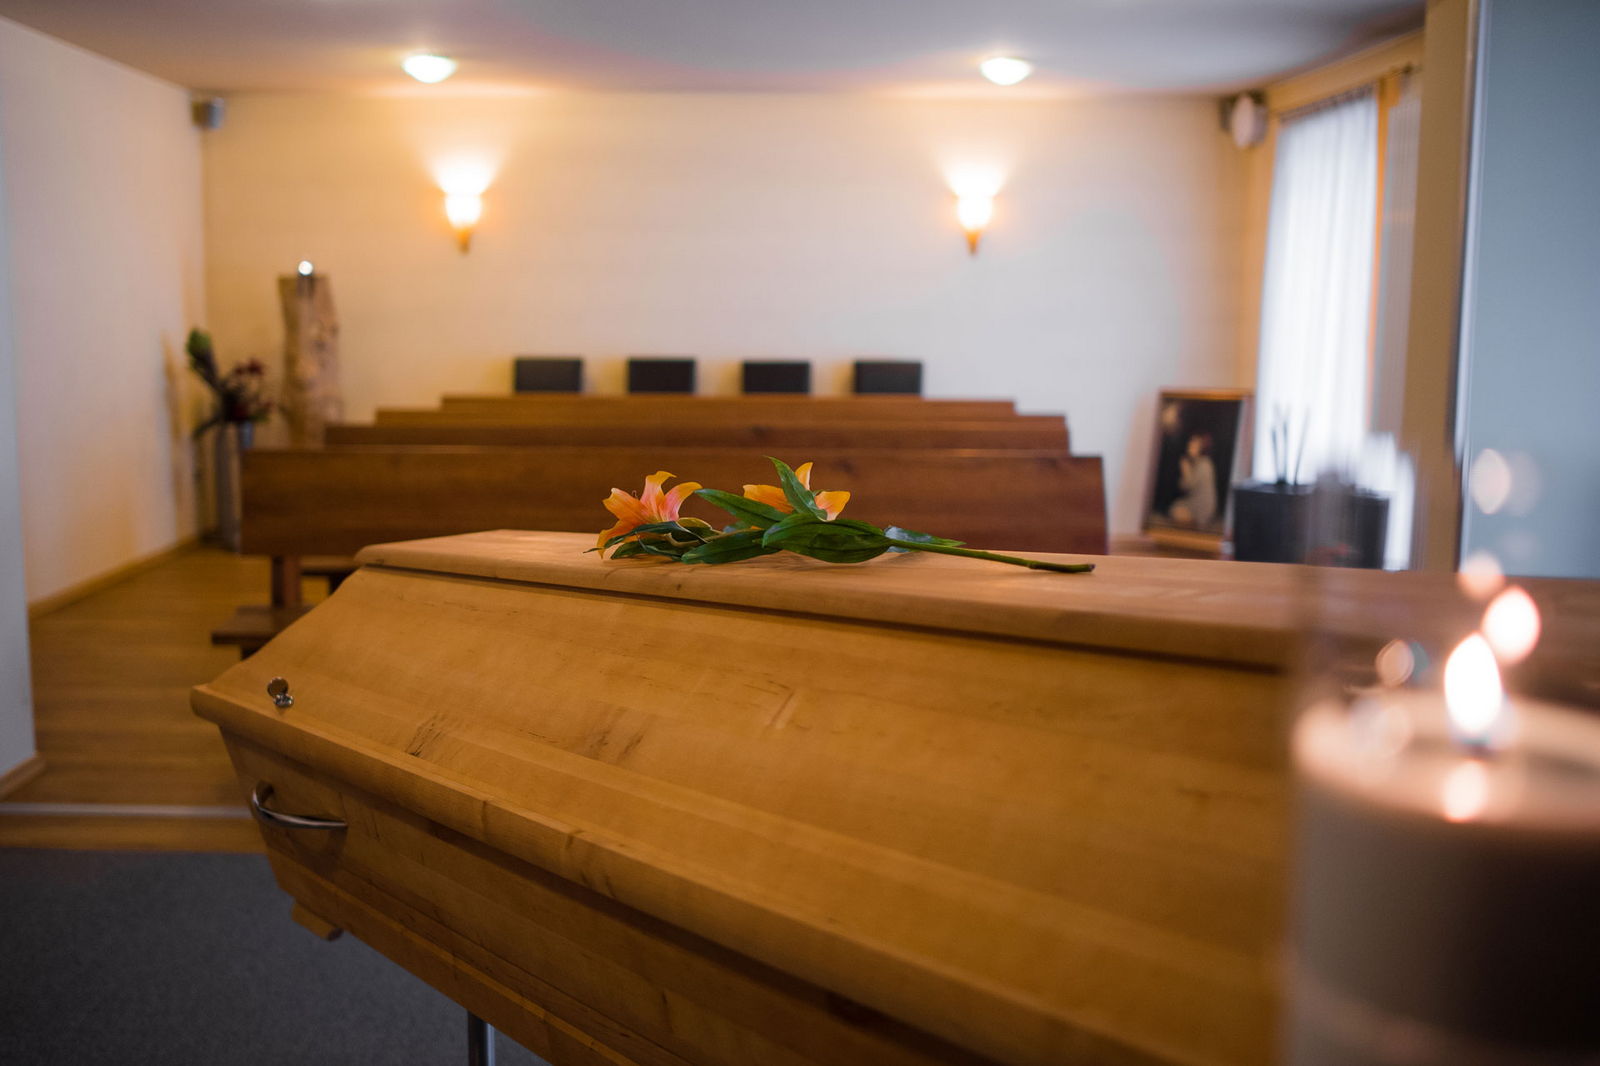 Sargaufbahrung in einem Trauerraum des Bestattungsinstituts Stumpf